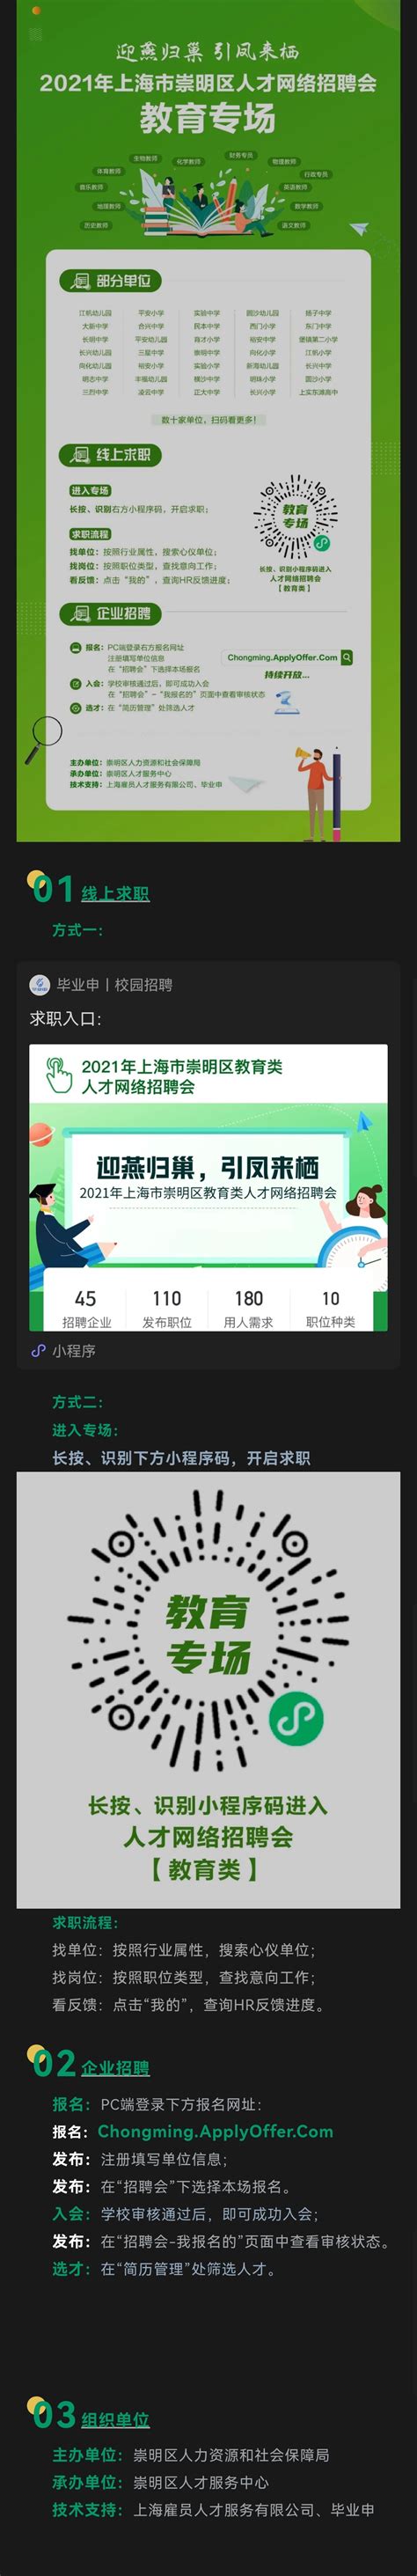 高明区网络营销介绍 上海珍岛供应价格_厂家_图片-淘金地